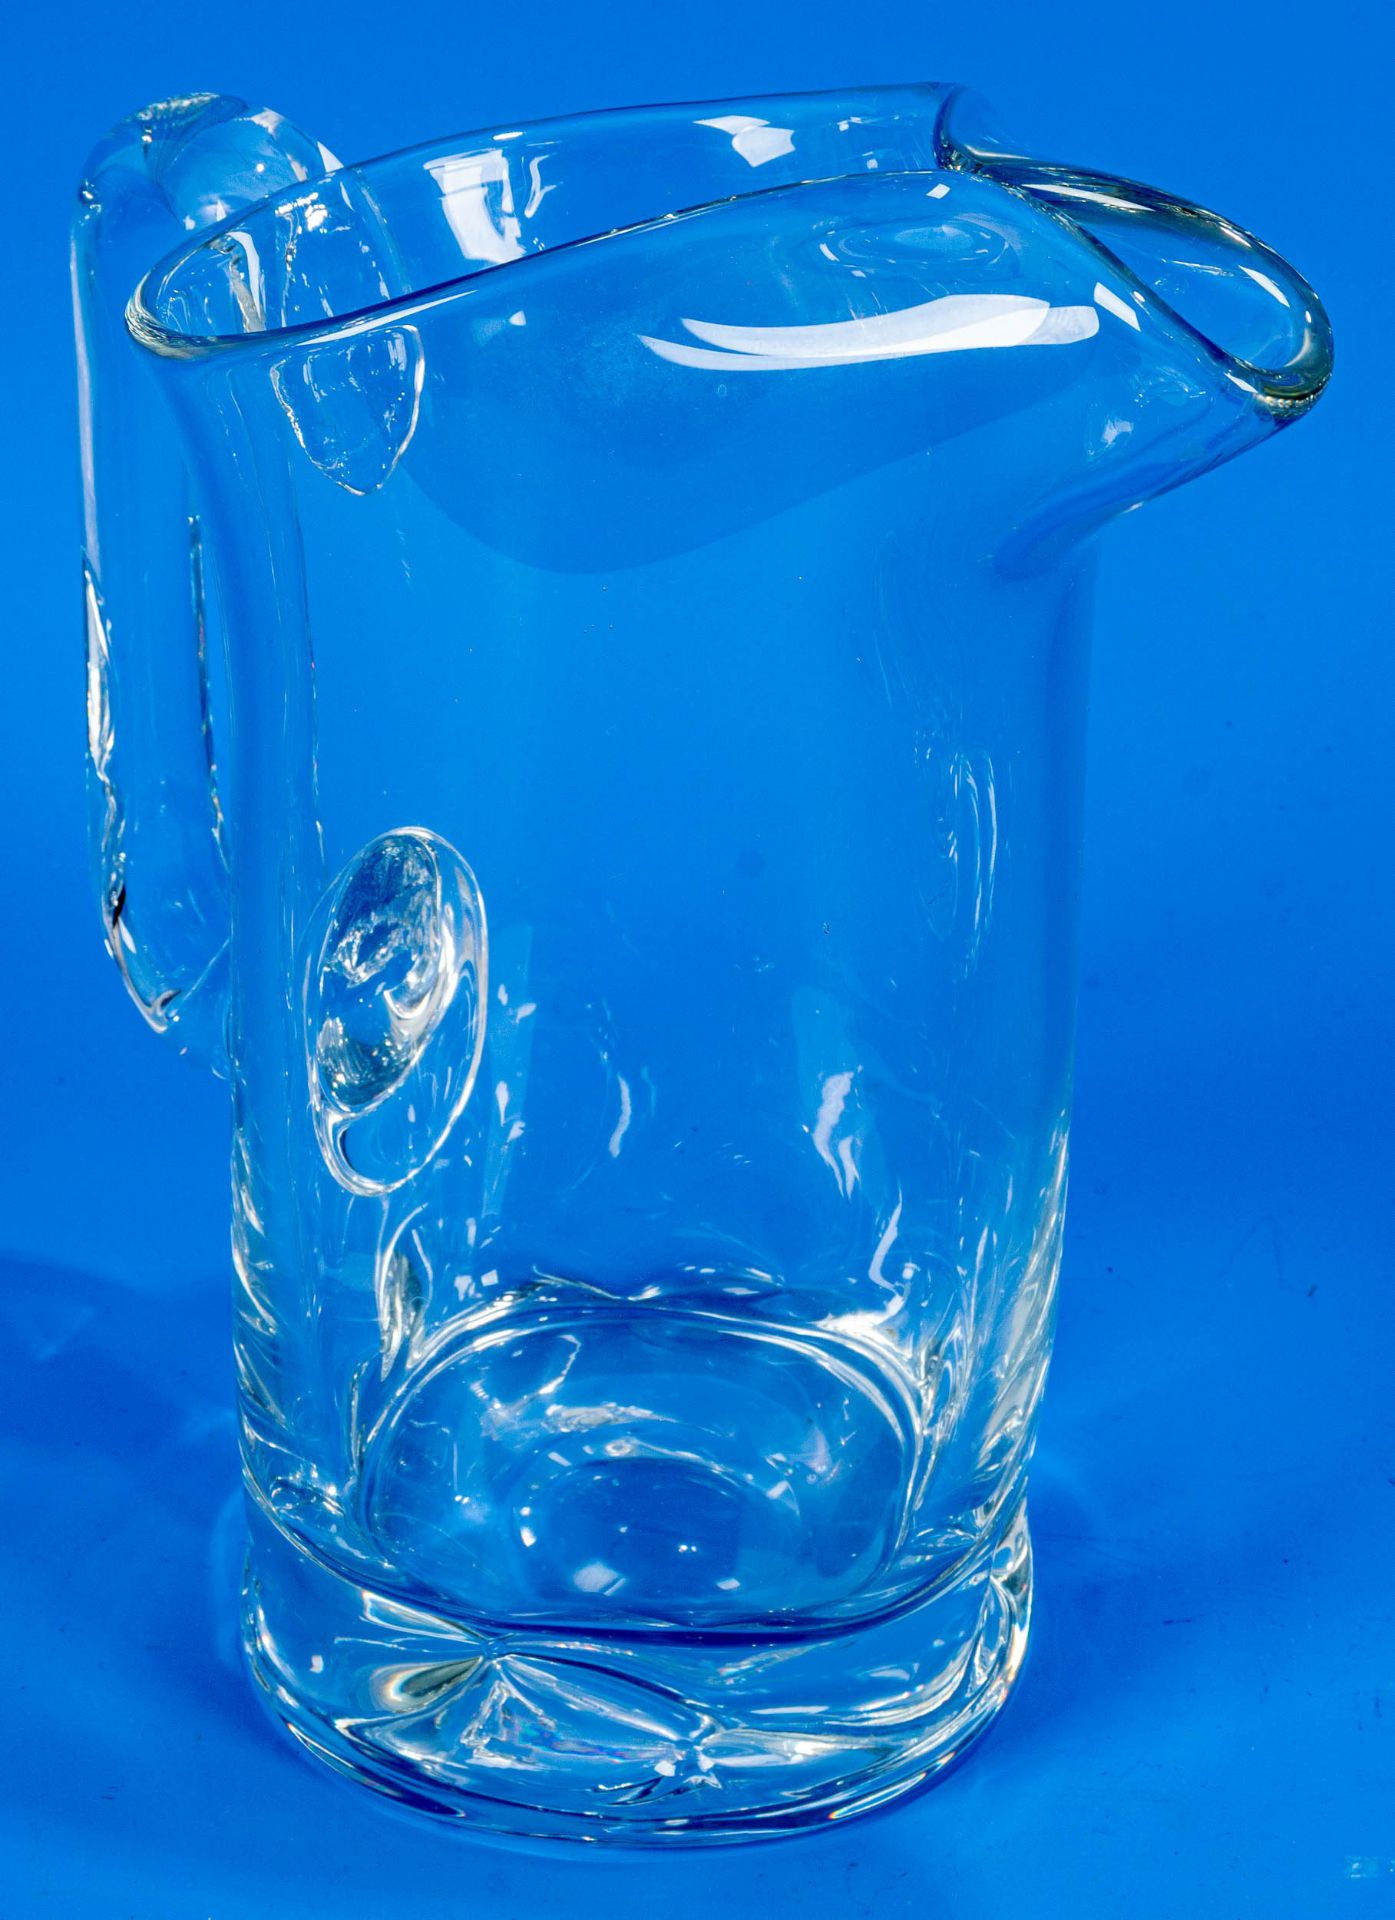 3teiliges Konvolut versch. Saftkrüge/Wasserkrüge. Farblose Glaskörper mit seitlichem Griff, teilwei - Image 7 of 9